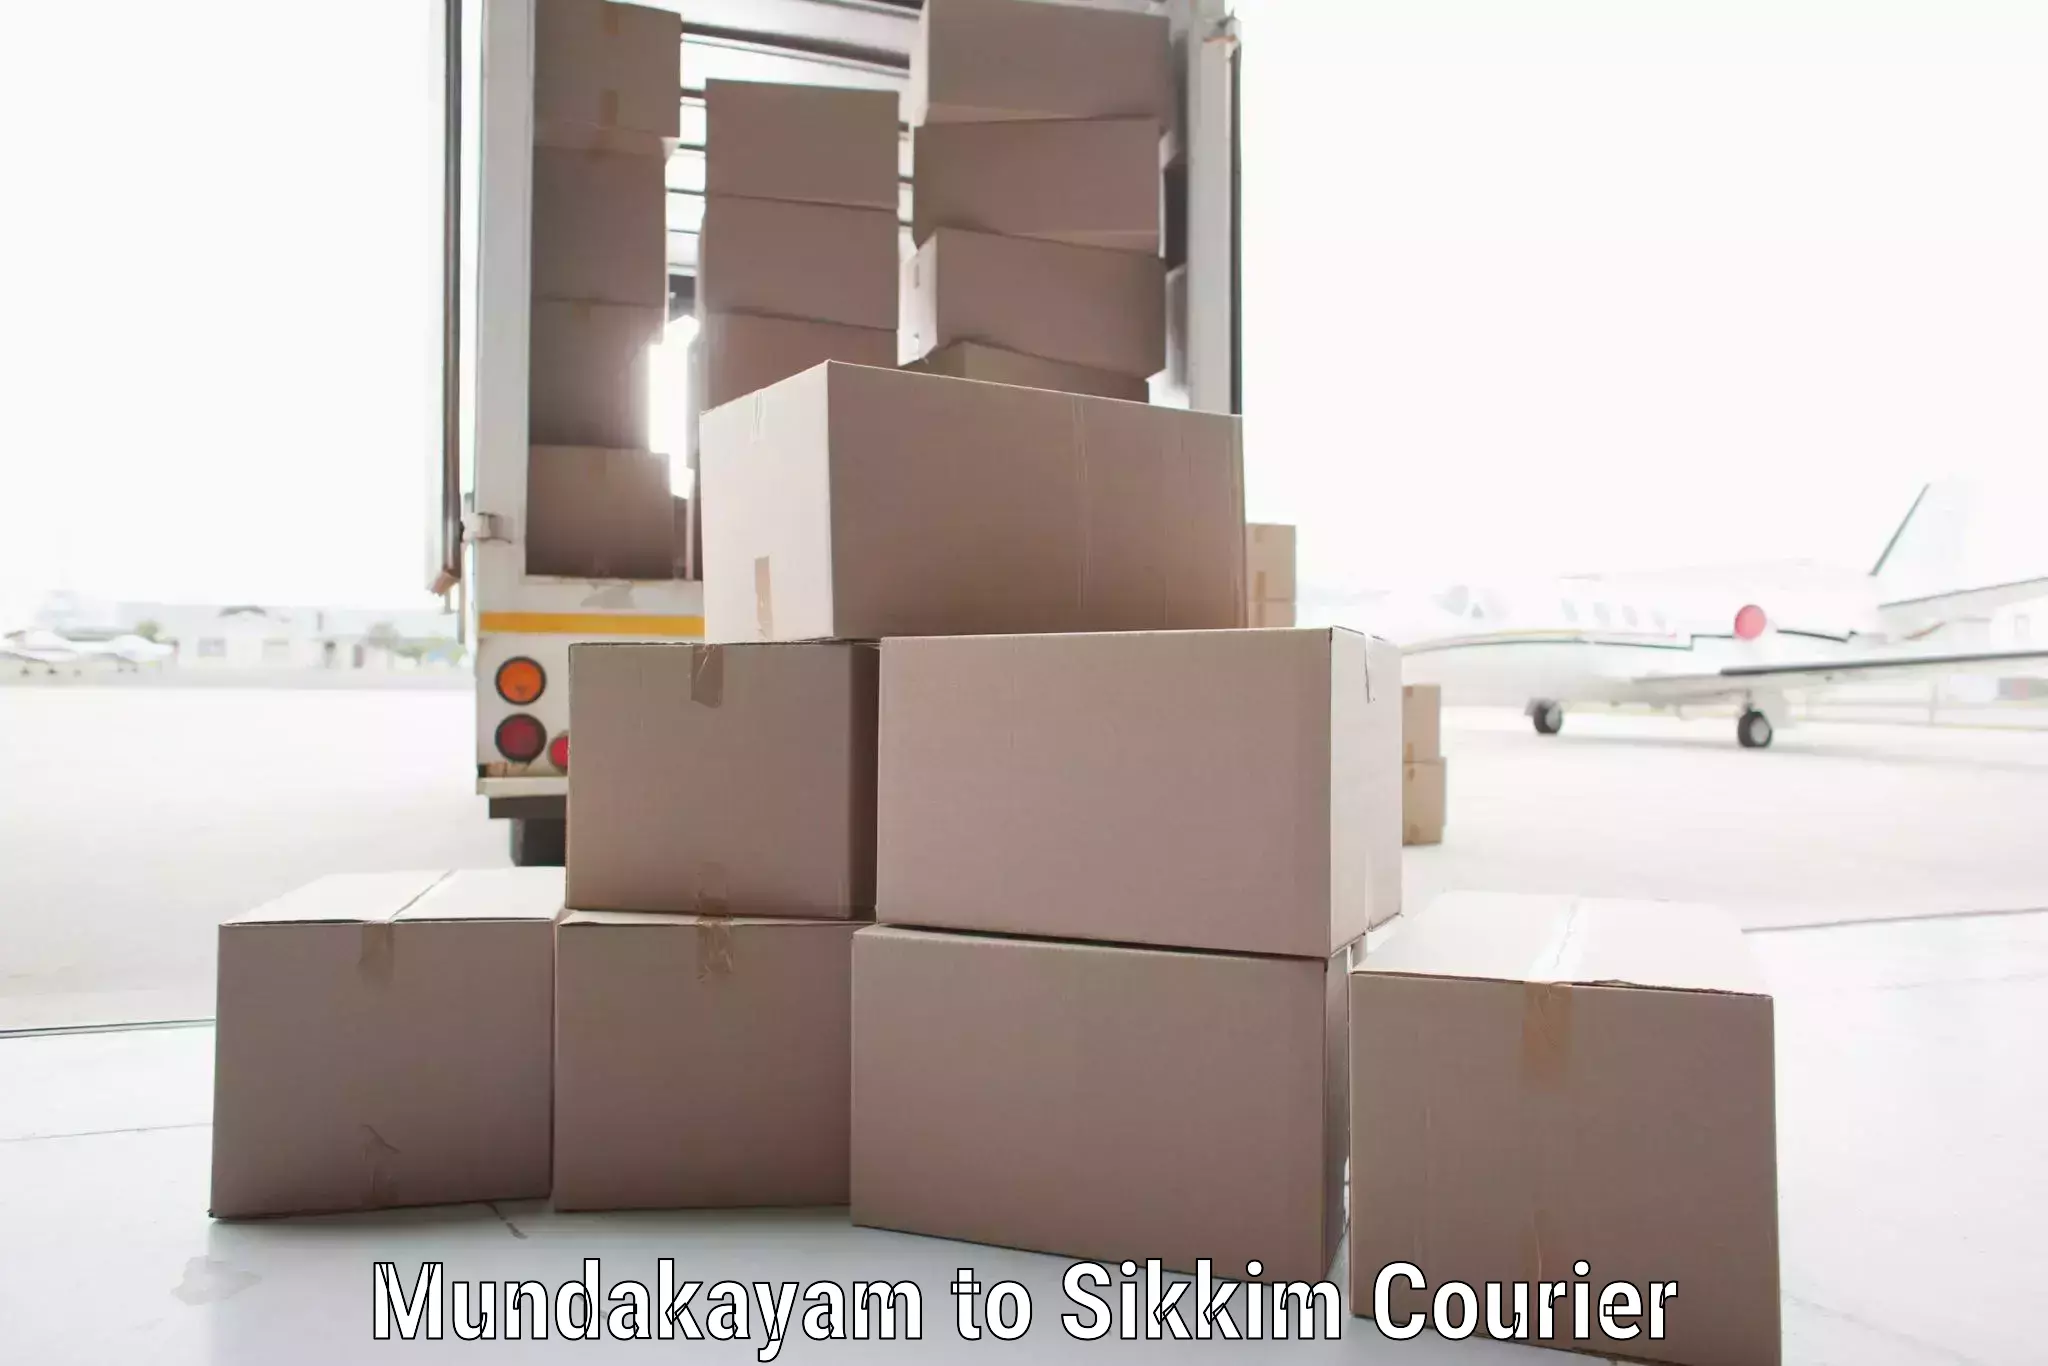 High-capacity parcel service Mundakayam to Namchi